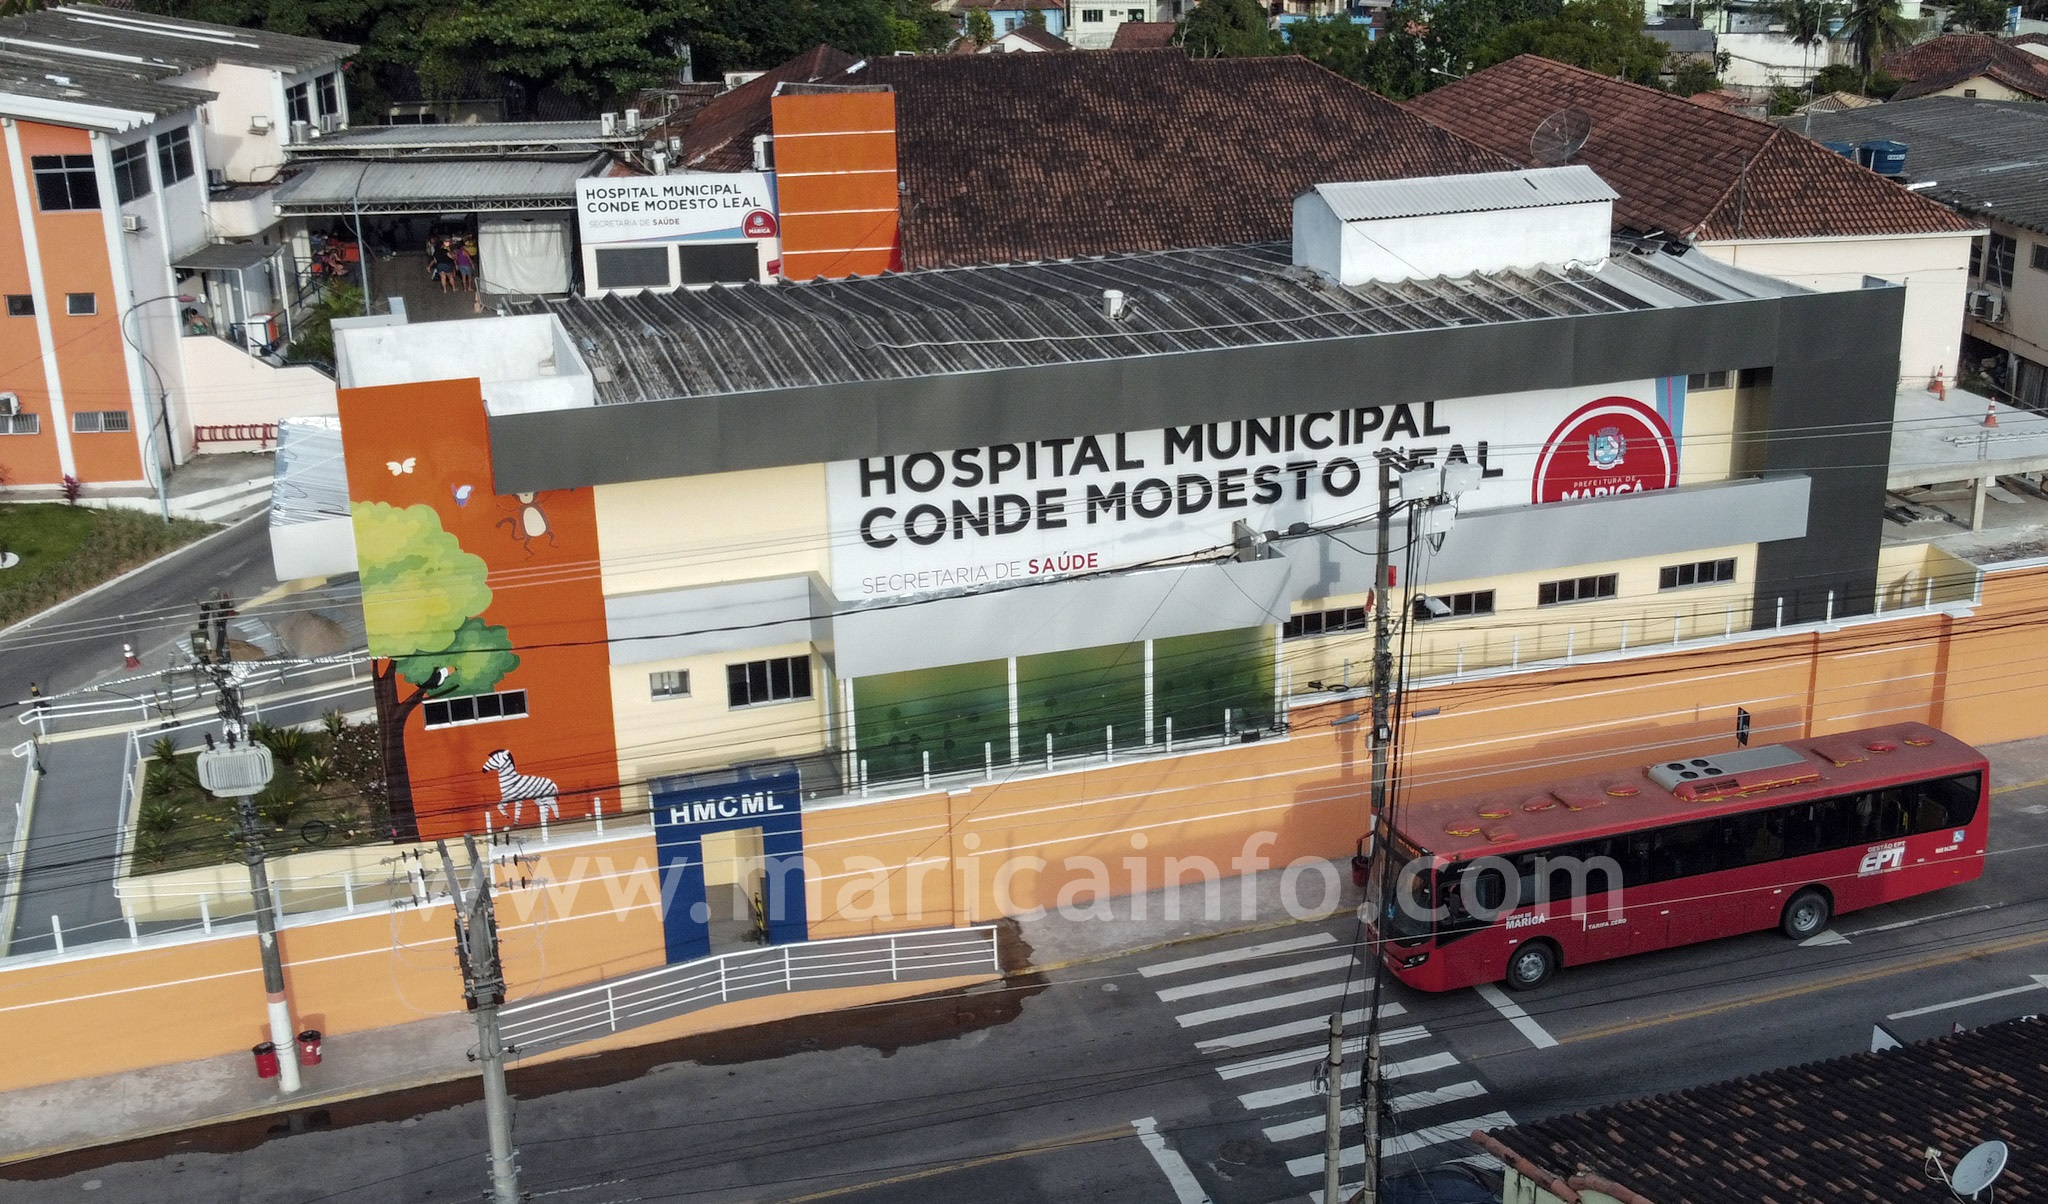 Centro Hospital Municipal Conde Modesto Leal